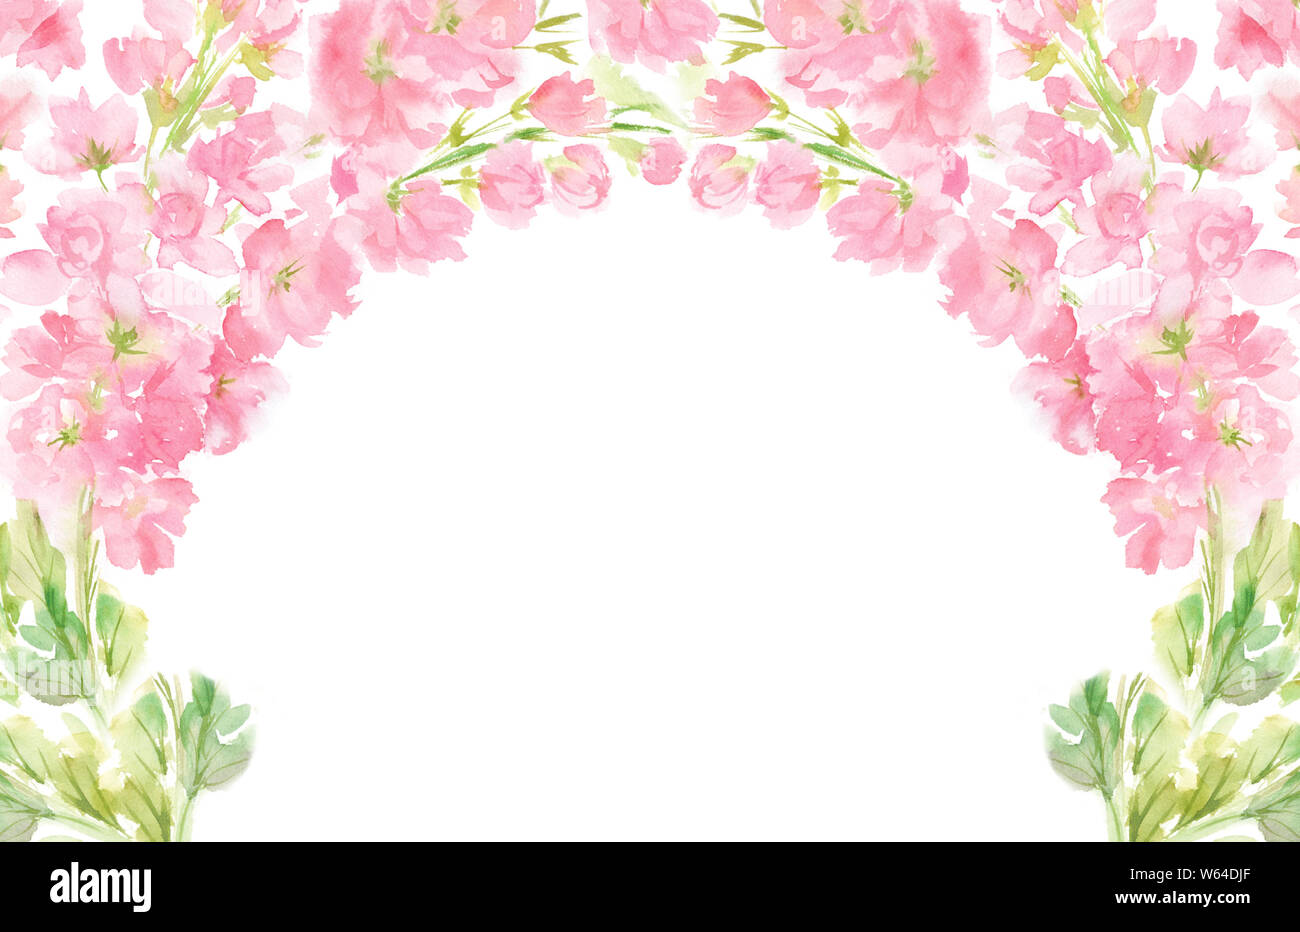 Rosa floreale astratta acquerello telaio orizzontale corona disposizione color pastello fiori e foglie dipinte a mano in background cerchio per il testo Foto Stock